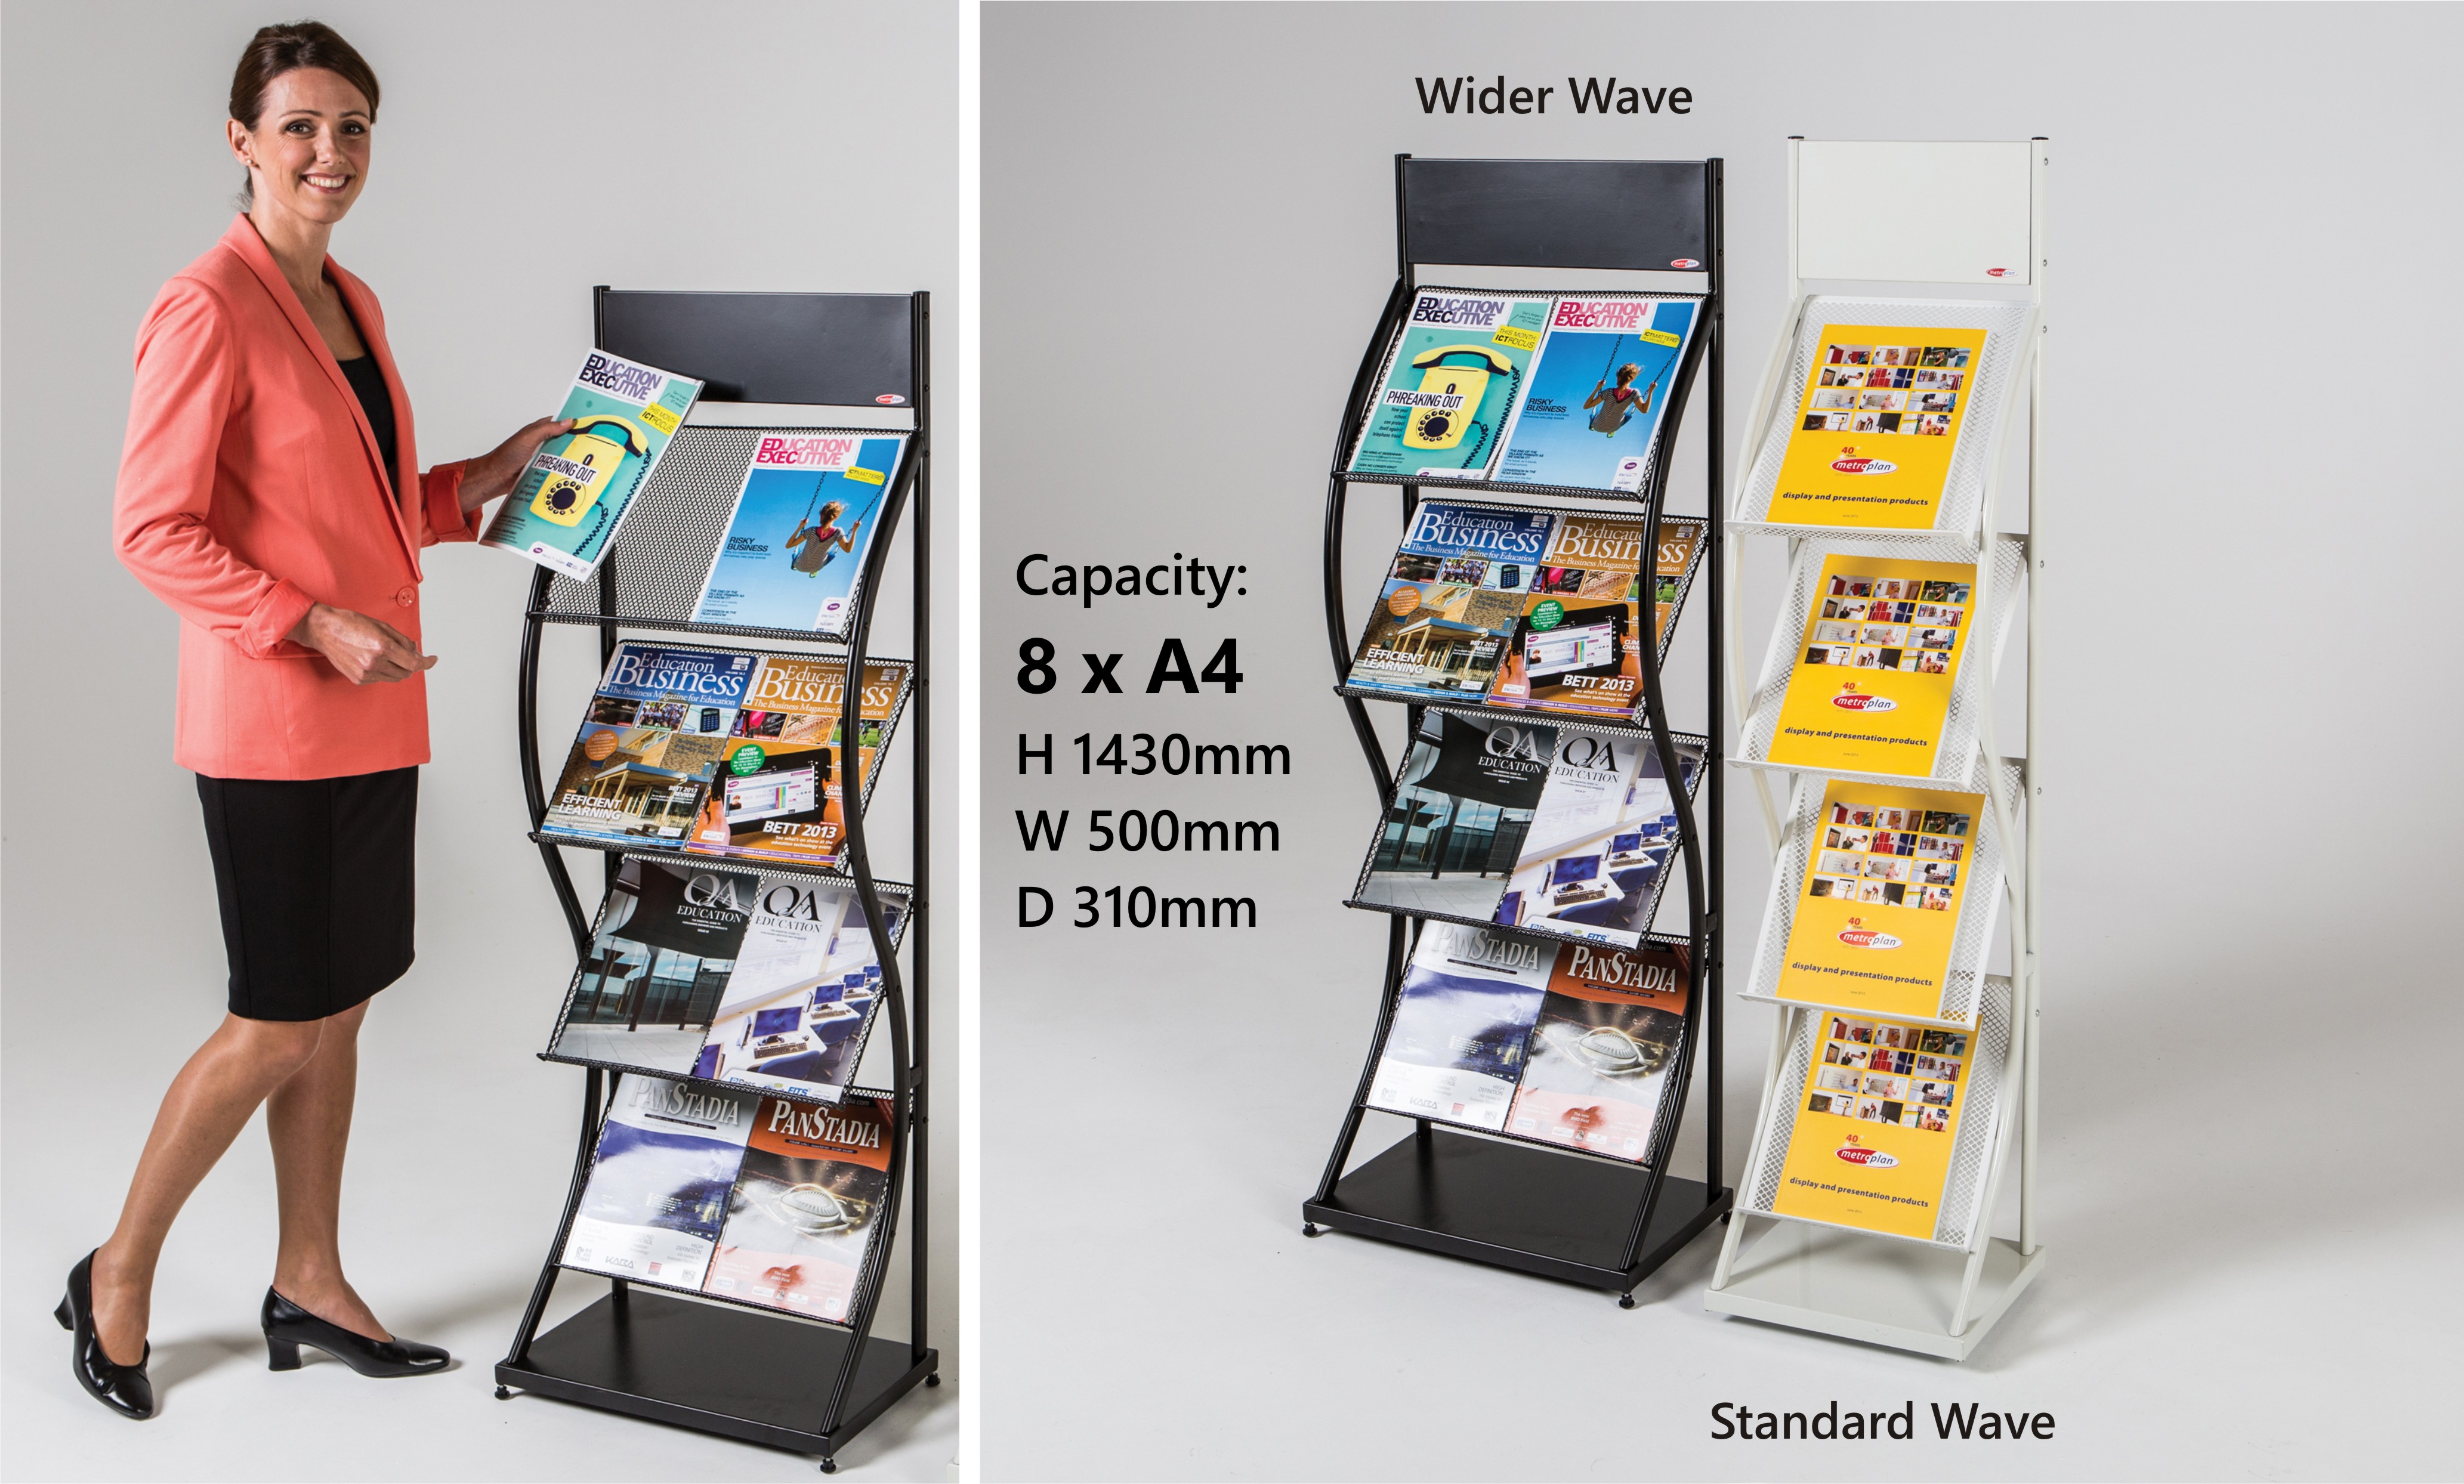 Wider Wave Freestanding Literature Dispenser